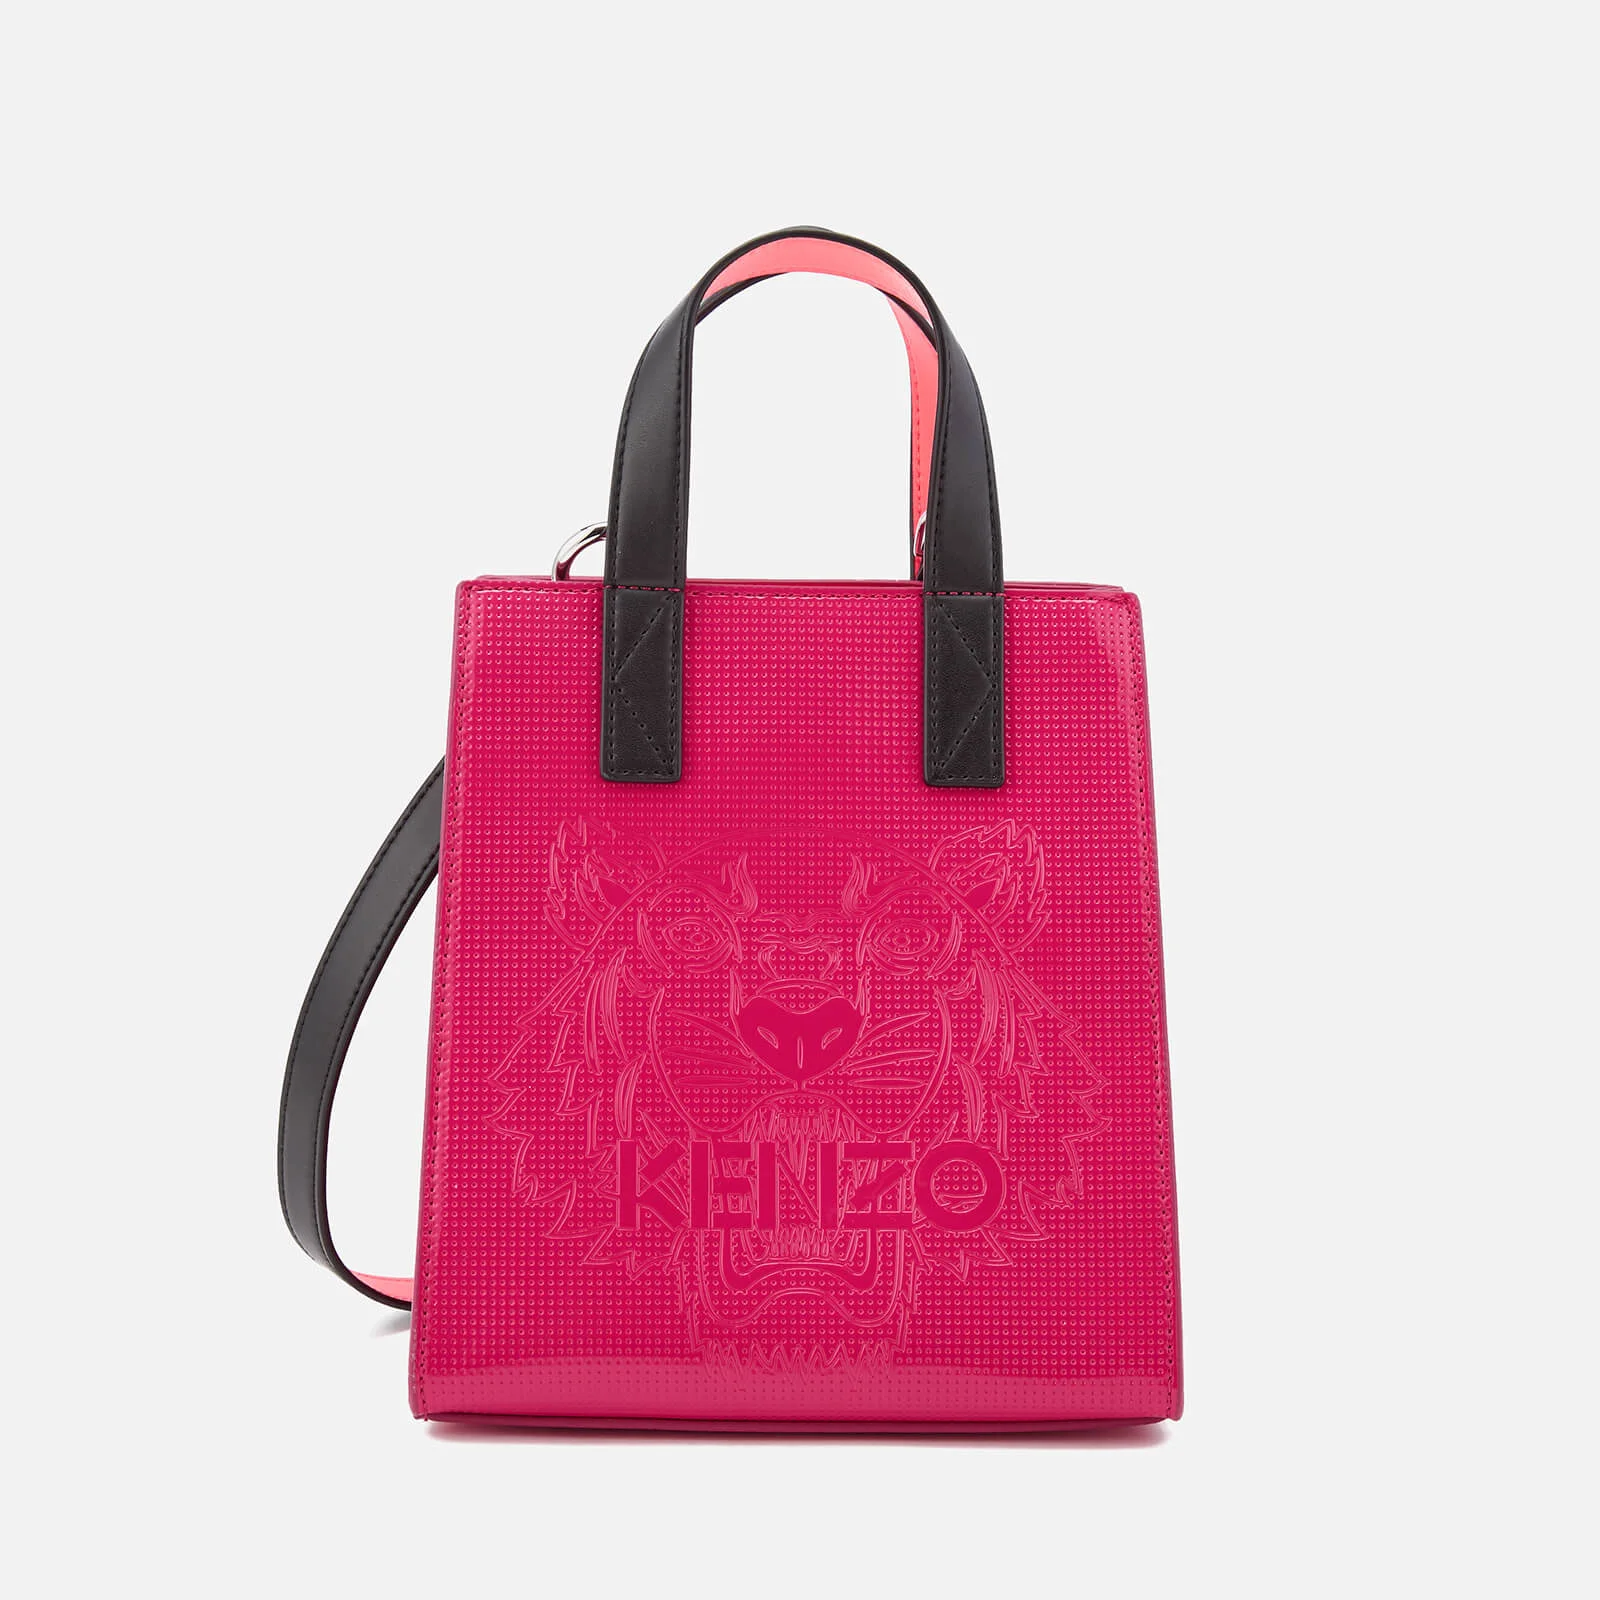 KENZO Women's Icons Horizontal Mini Tote Bag - Deep Fuchsia Image 1